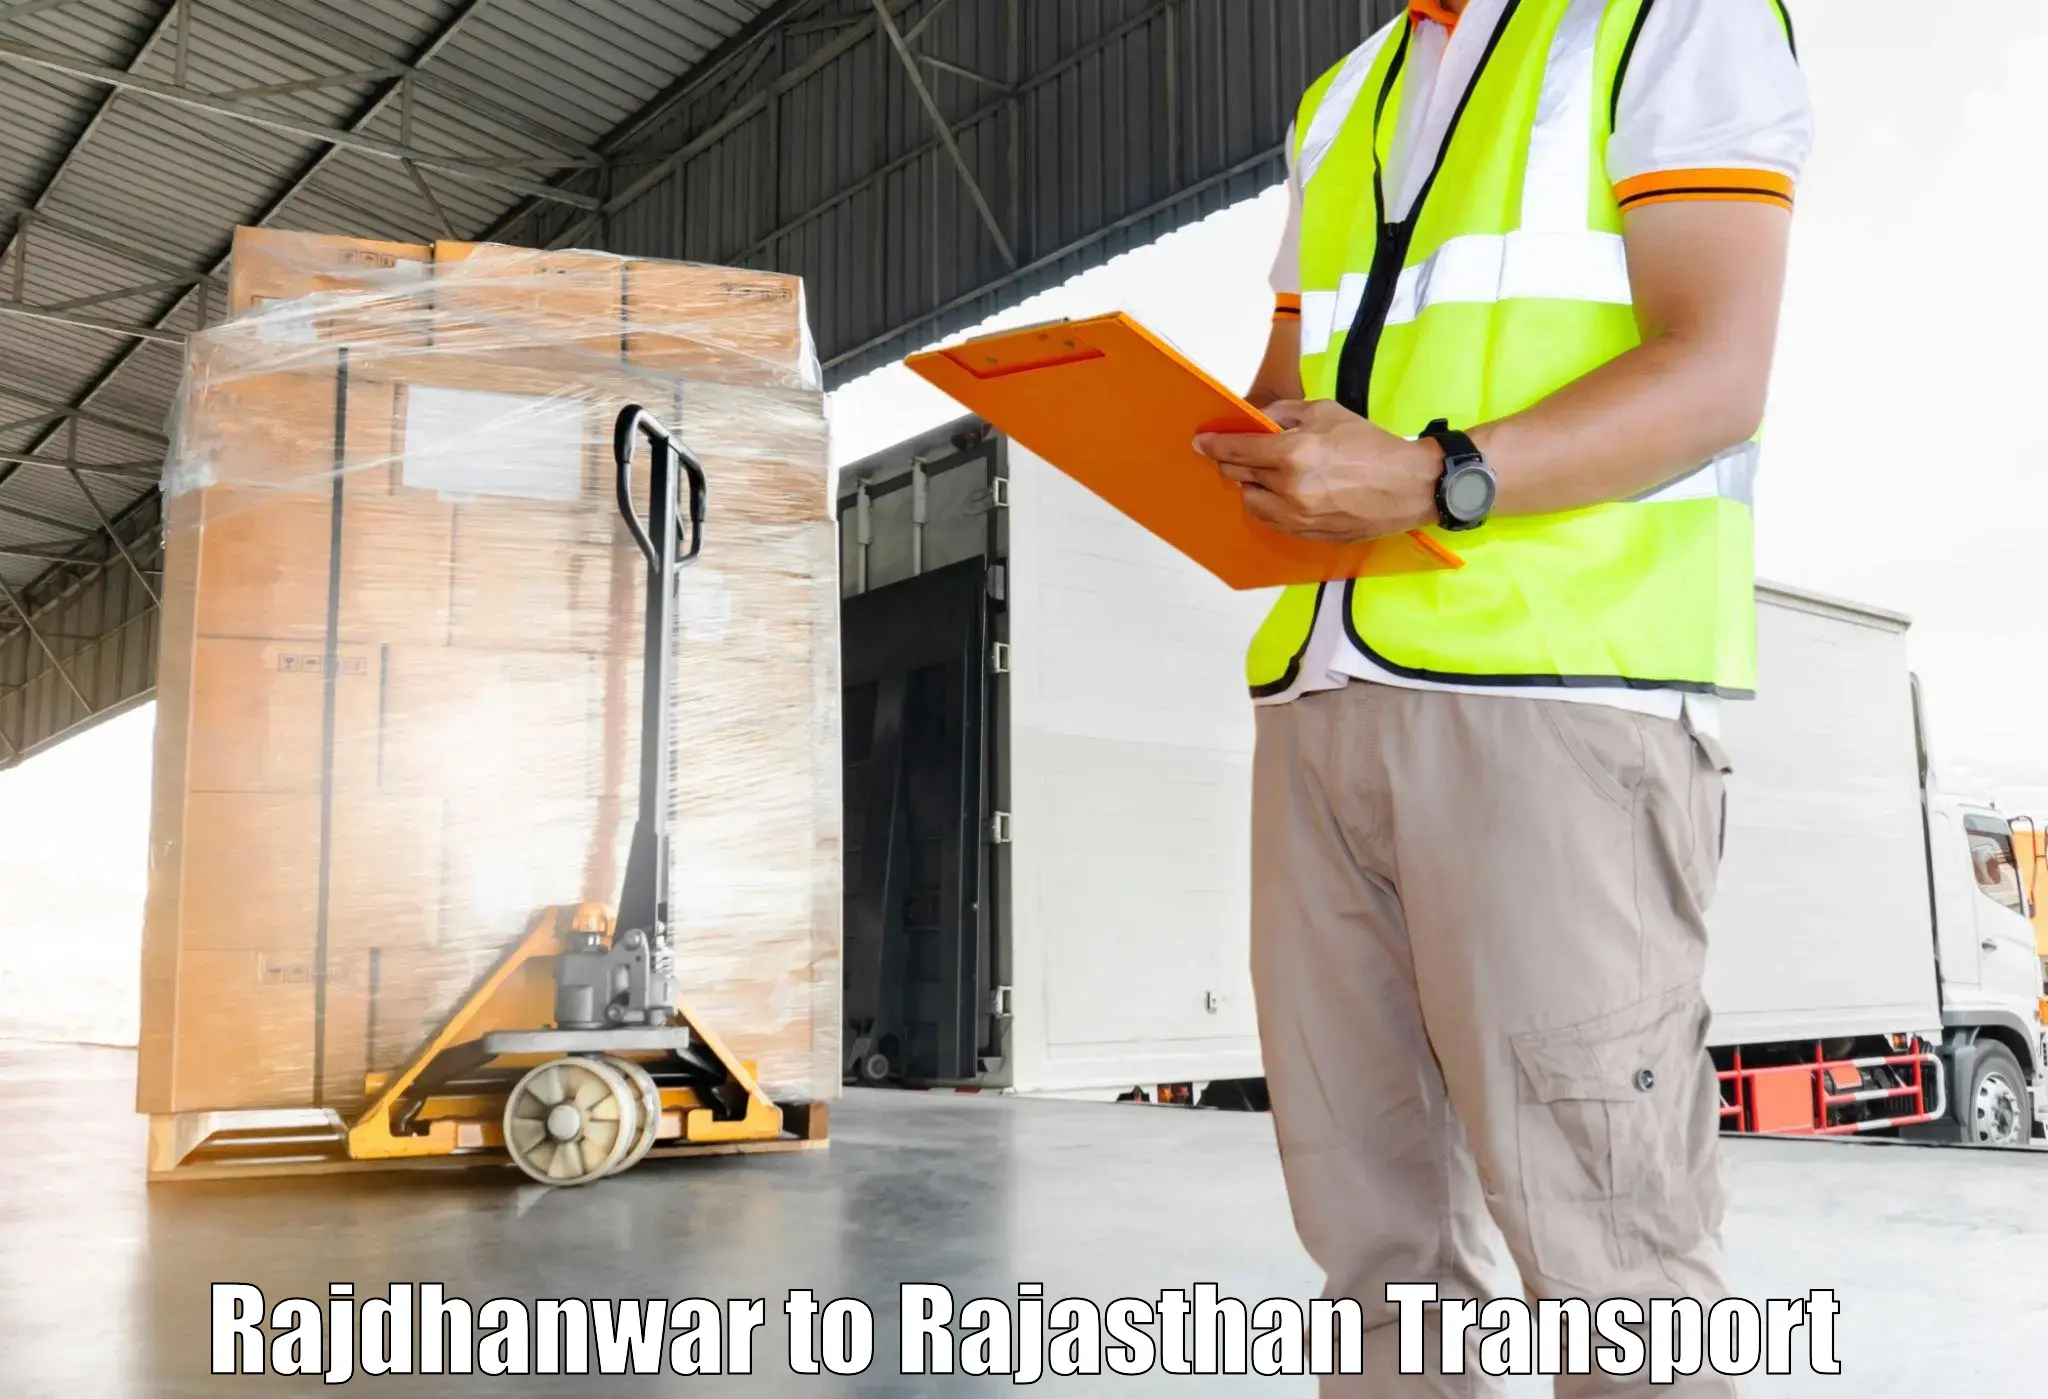 Container transport service Rajdhanwar to Sardarshahr